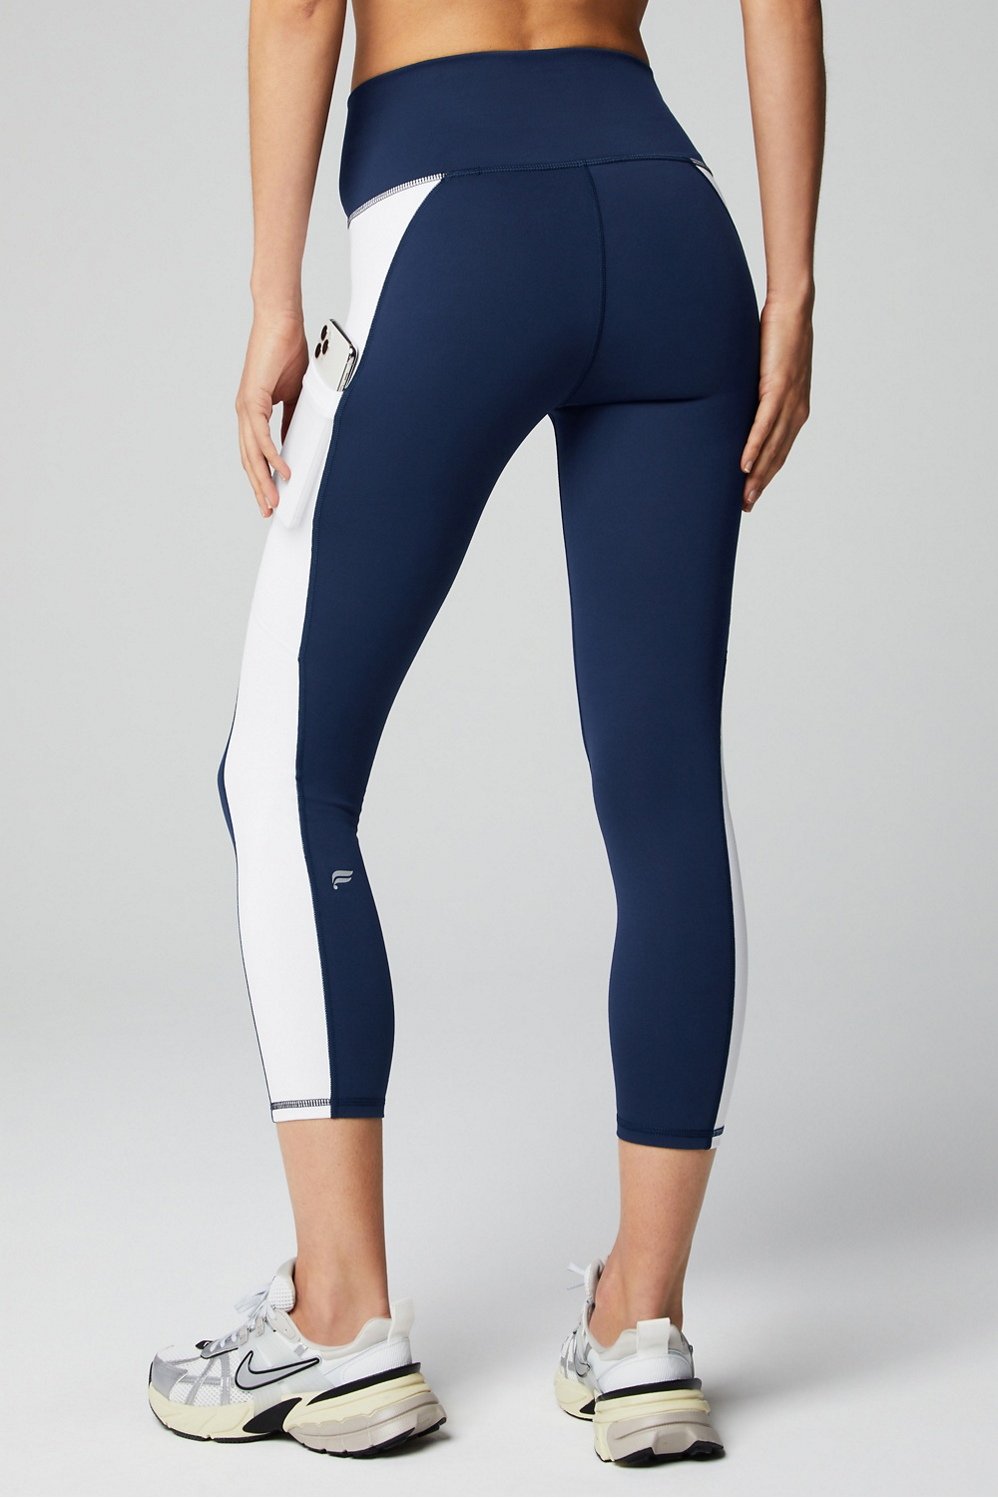 Women's Women's Mesh Side Capri Activewear Leggings - Navy Blue, M